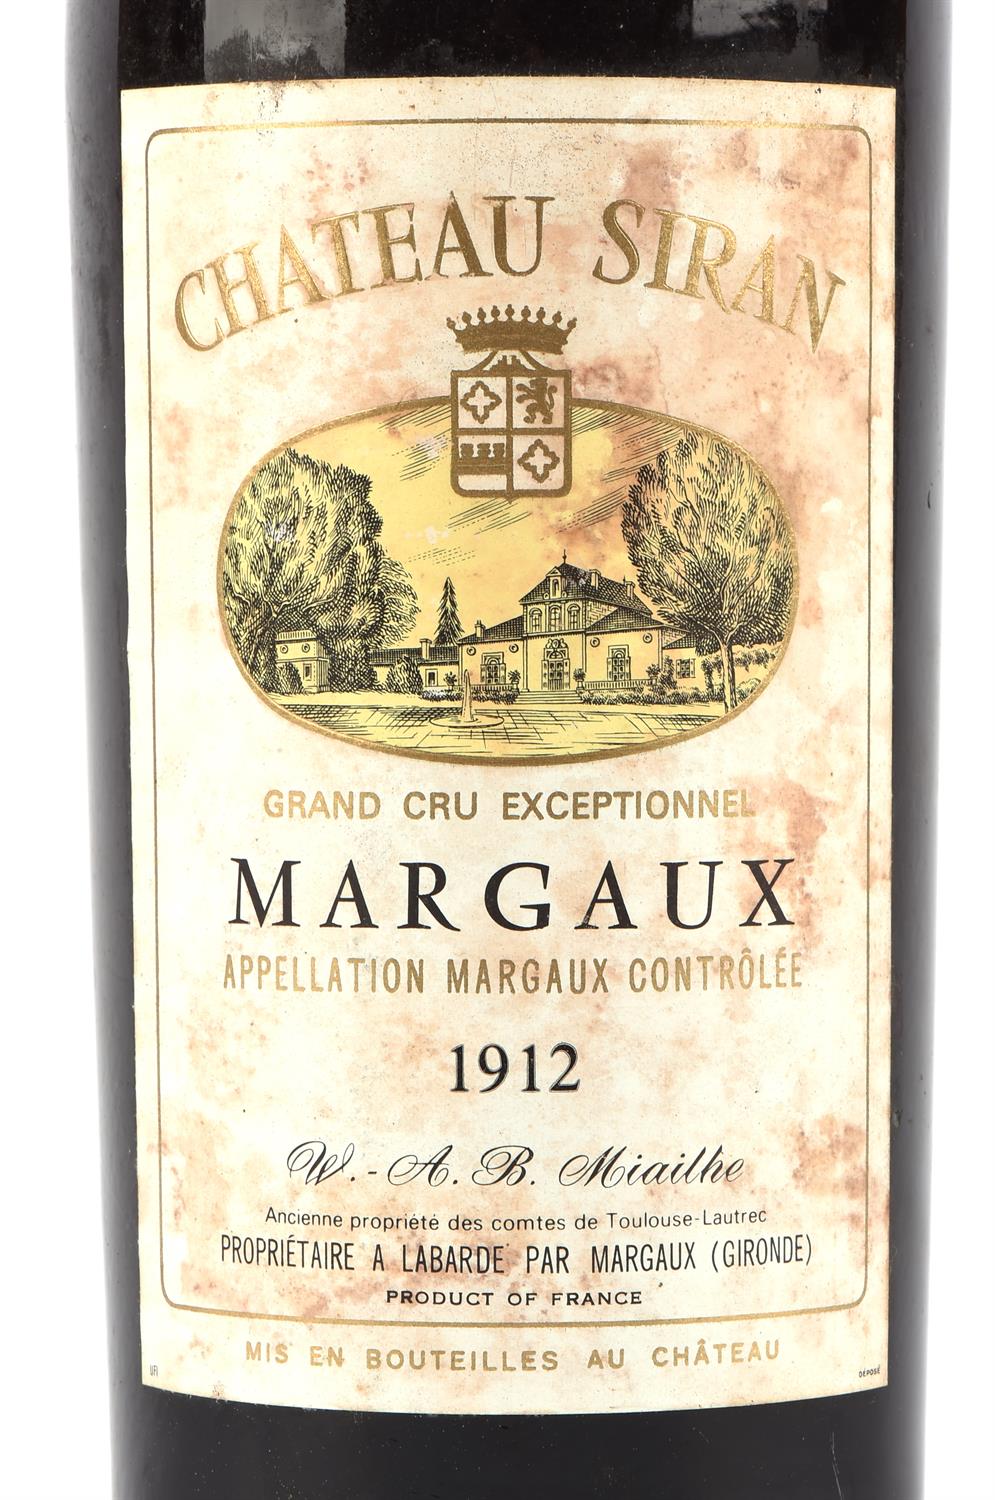 Bordeaux wines, Chateau Siron 1912, Grand Cru Margaux, 1 bottle - Bild 2 aus 3